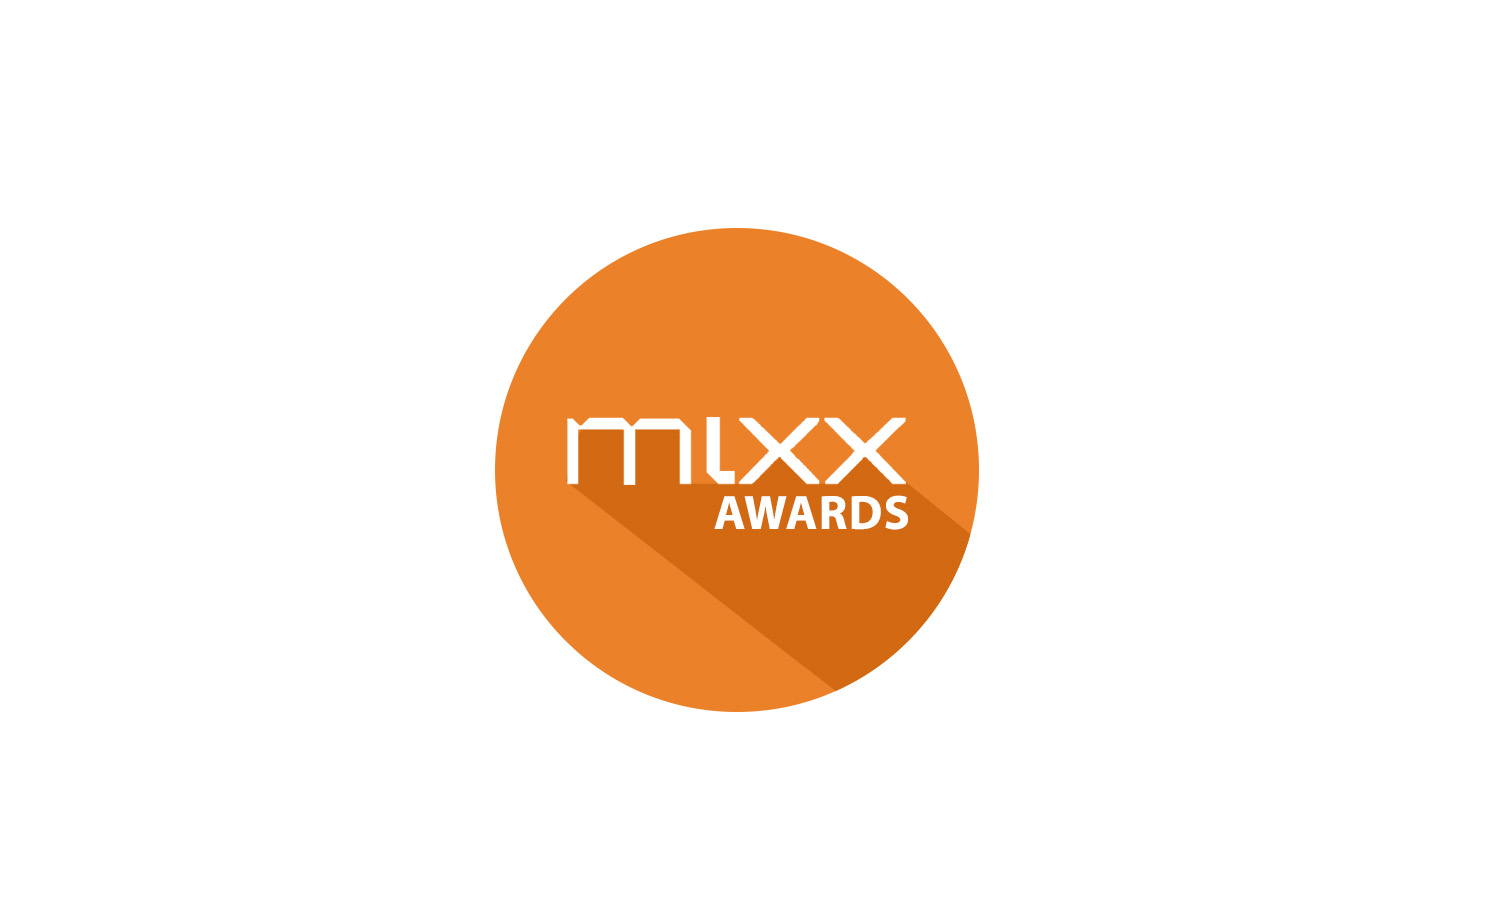 Biuro Podróży Reklamy nominowane do MIXX Awards 2014